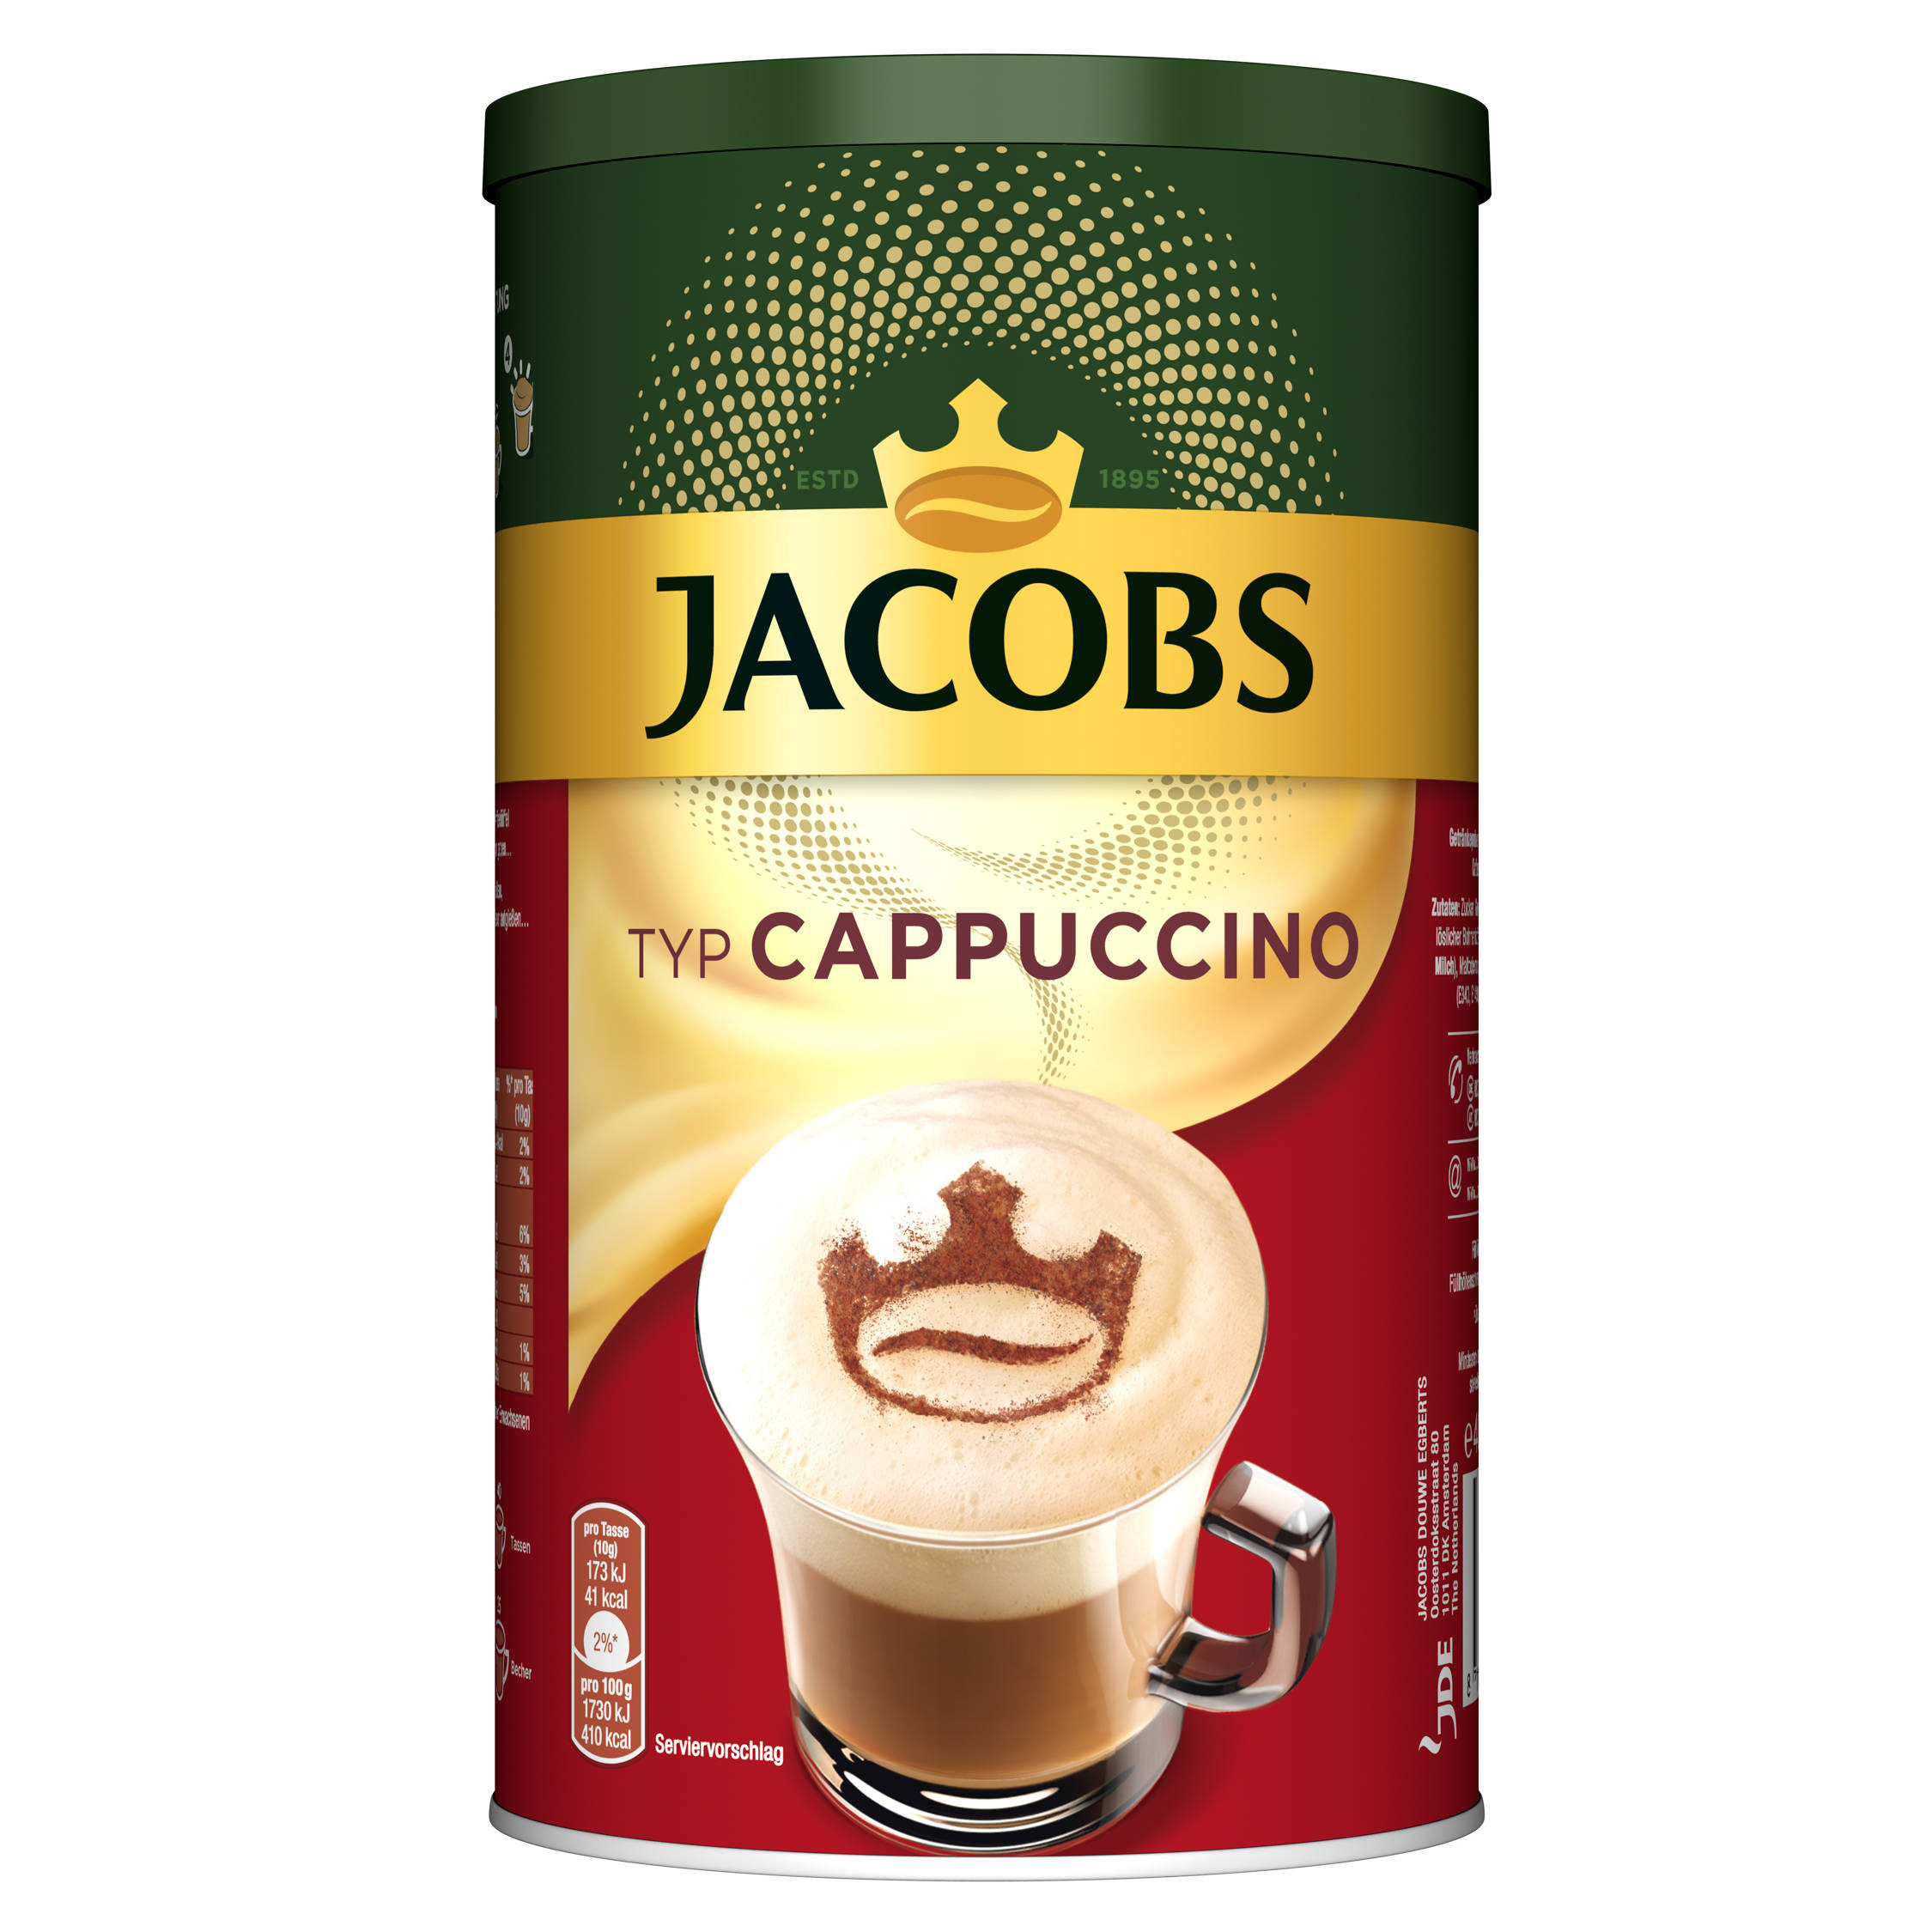 Typ Dosen 400 Instantkaffee JACOBS 6 Wasser (In g heißem x auflösen) Cappuccino